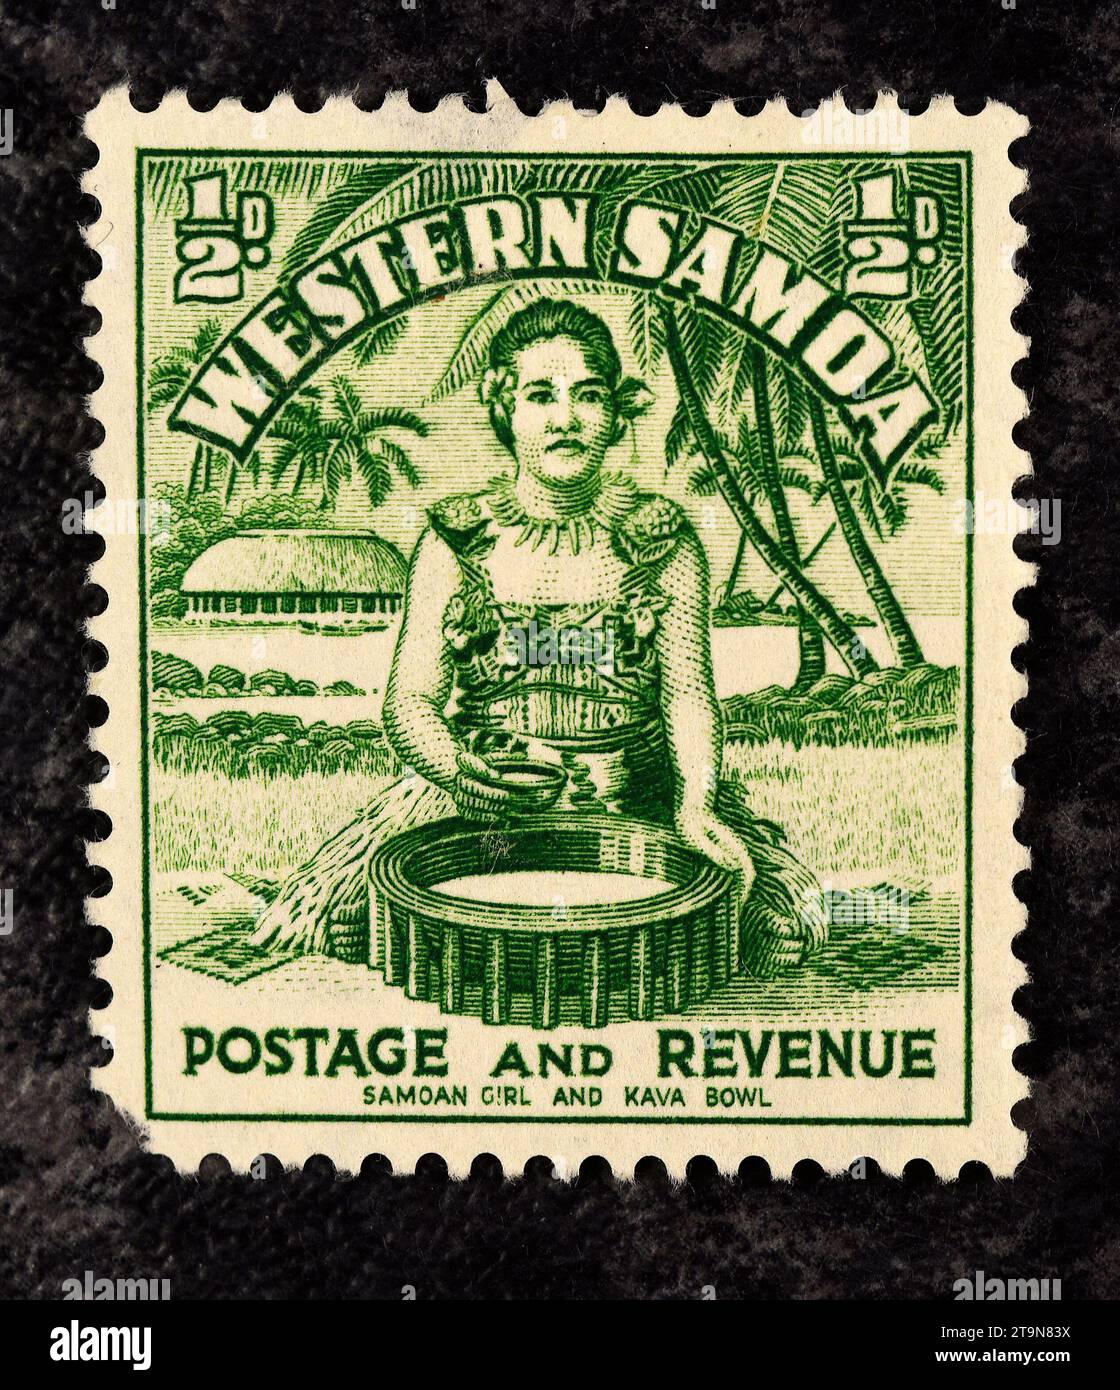 Samon Girl And Kava Bowl – Western Samoa Postage Stamp Stock Photo